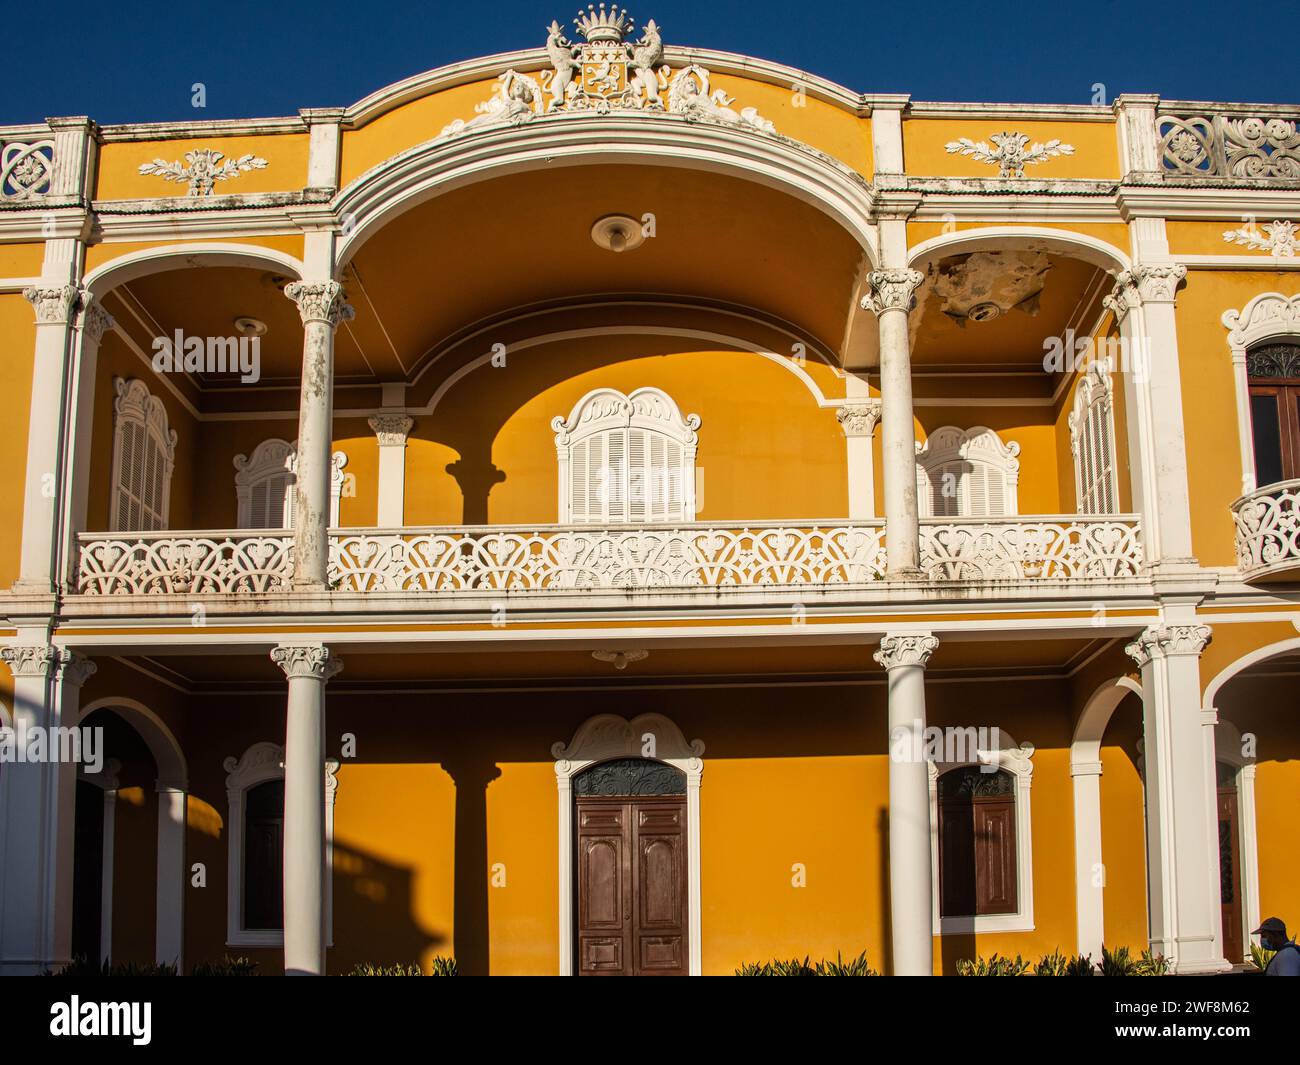 Spanish colonial architecture in Granada, Nicaragua Stock Photo